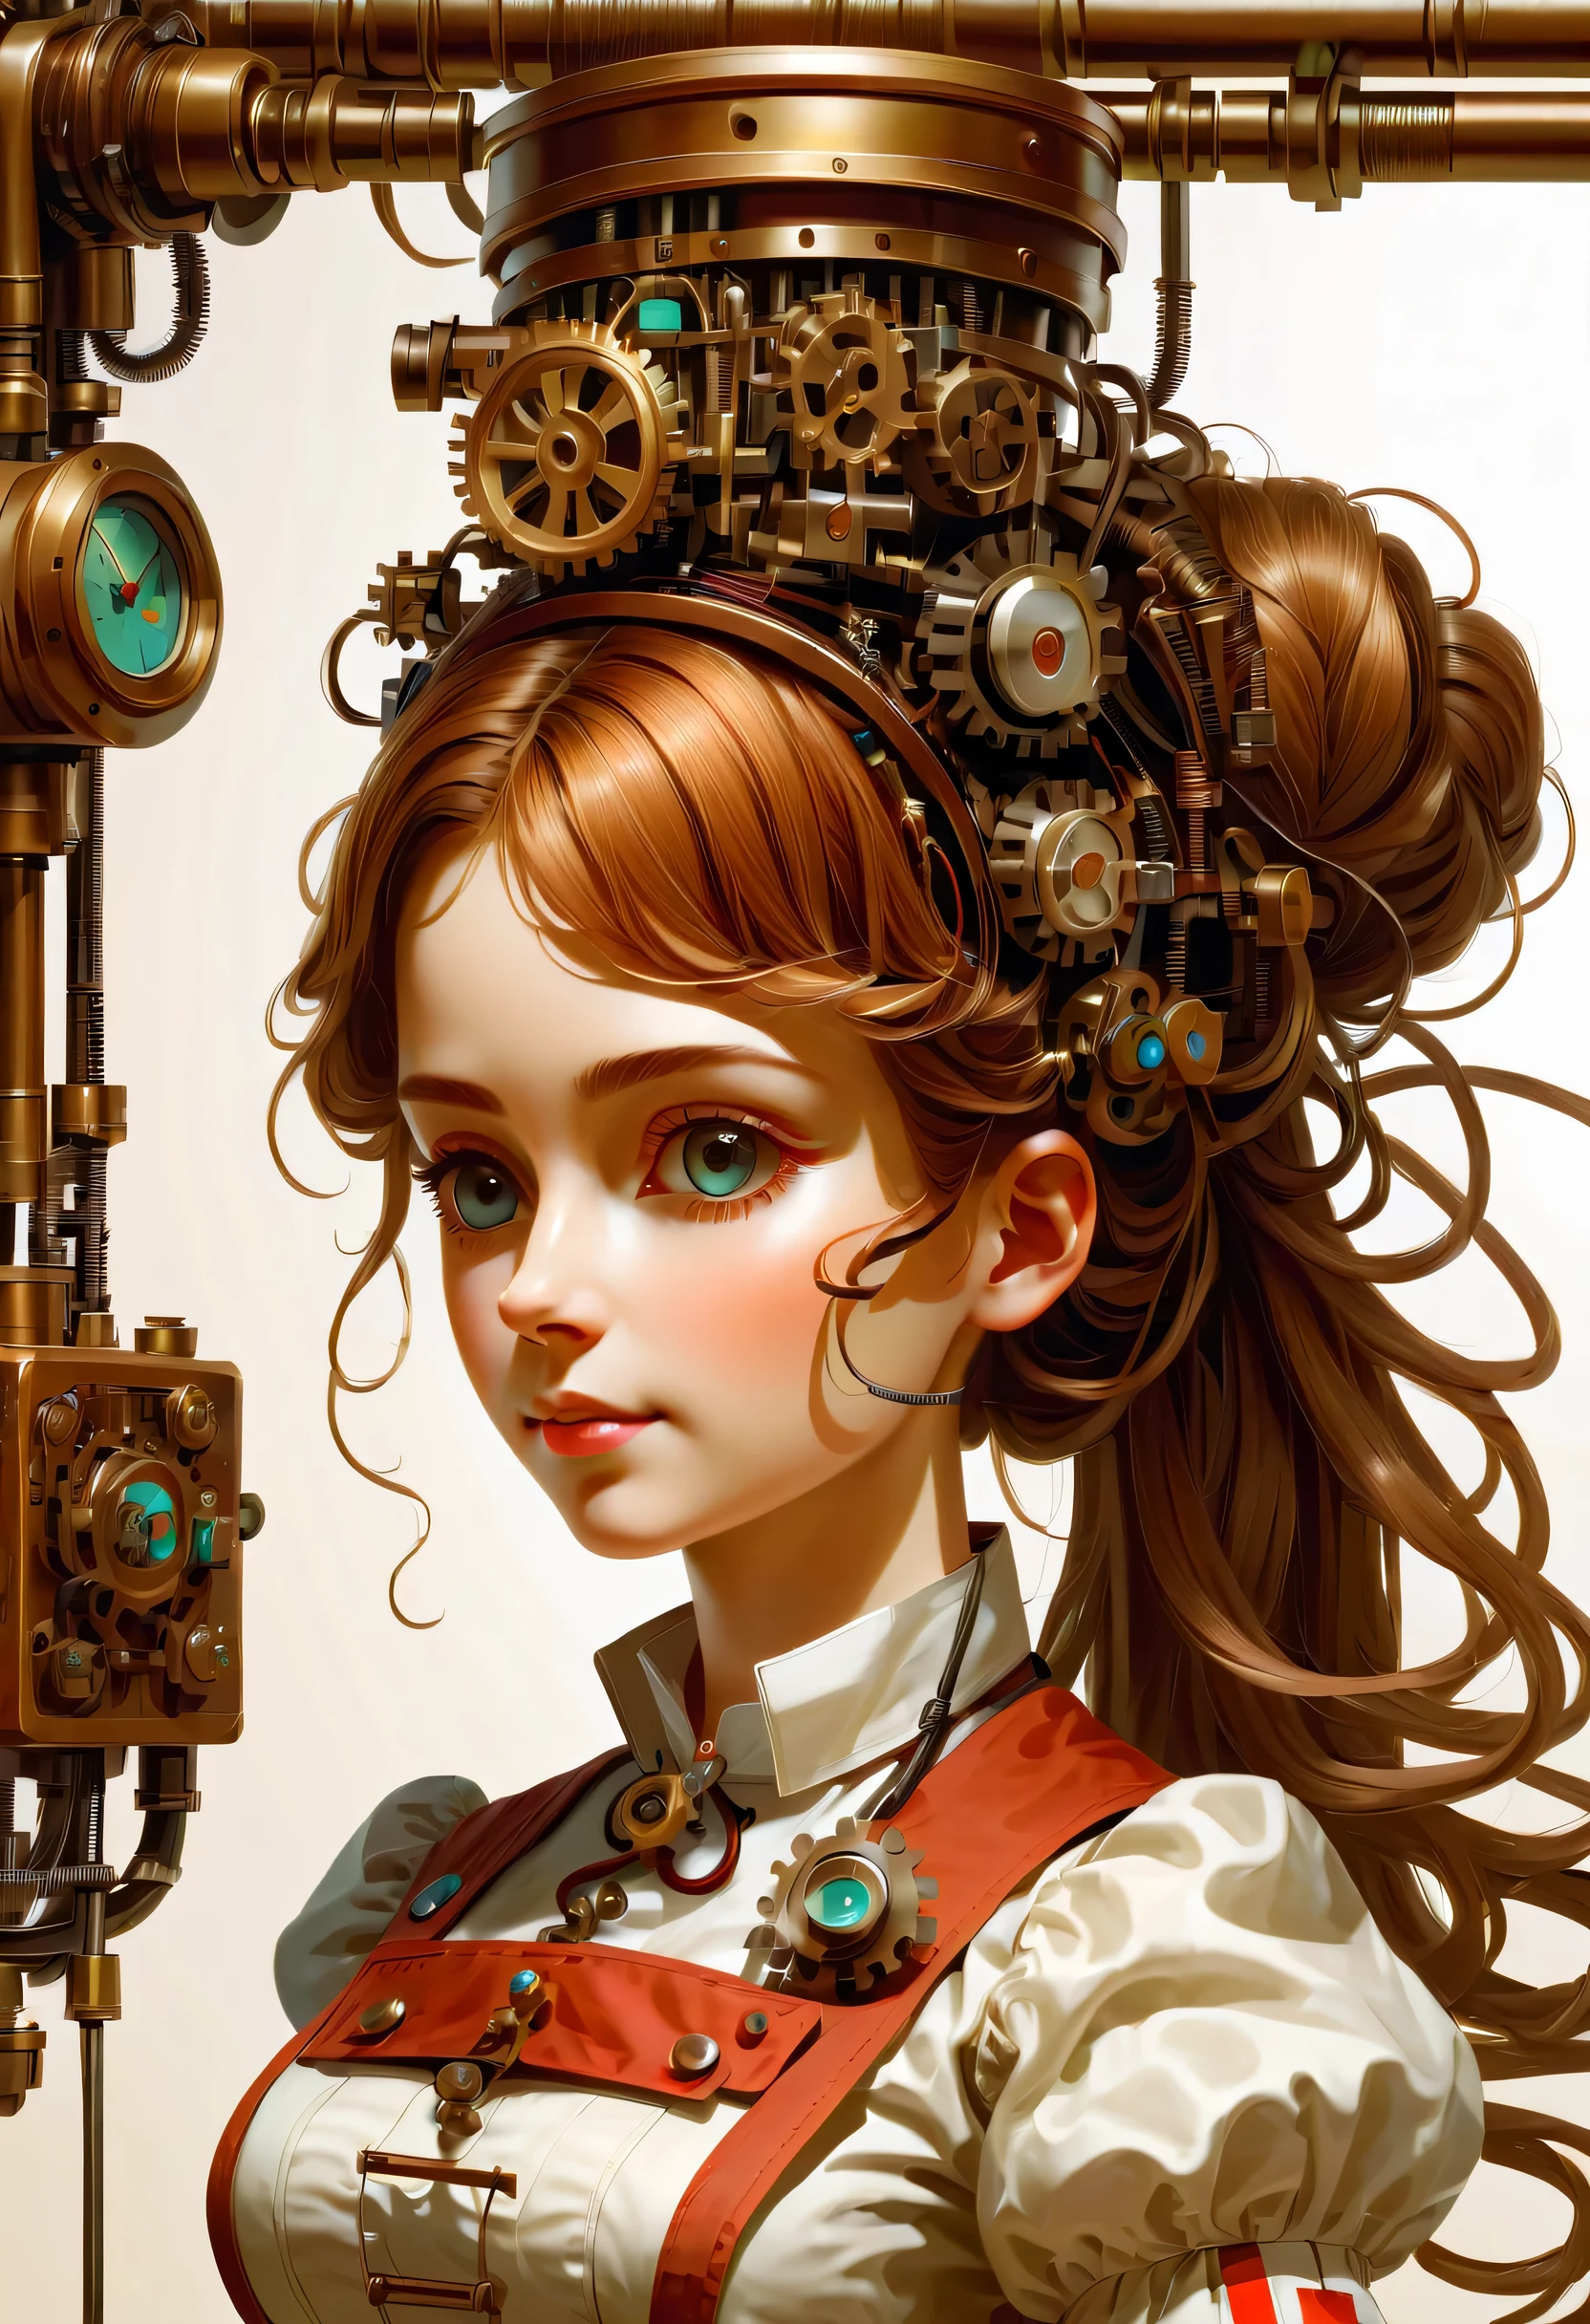 机制:人形生物:護士:16th century European 護士 uniform,医疗用品,使用電線作為髮飾,接线,她是由機器製成的,蒸汽朋克元素,机械的 engineering,机械的ly,机械的,流行音樂,可愛的,裝置,軸,錯綜複雜的細節,很好,高解析度,高品質,最高品質,清楚地,清楚,美麗的光影,三个维度,可愛的外表,複雜的配置,机制,動態的,忙碌的,努力工作,讓人想要支持的表達方式,